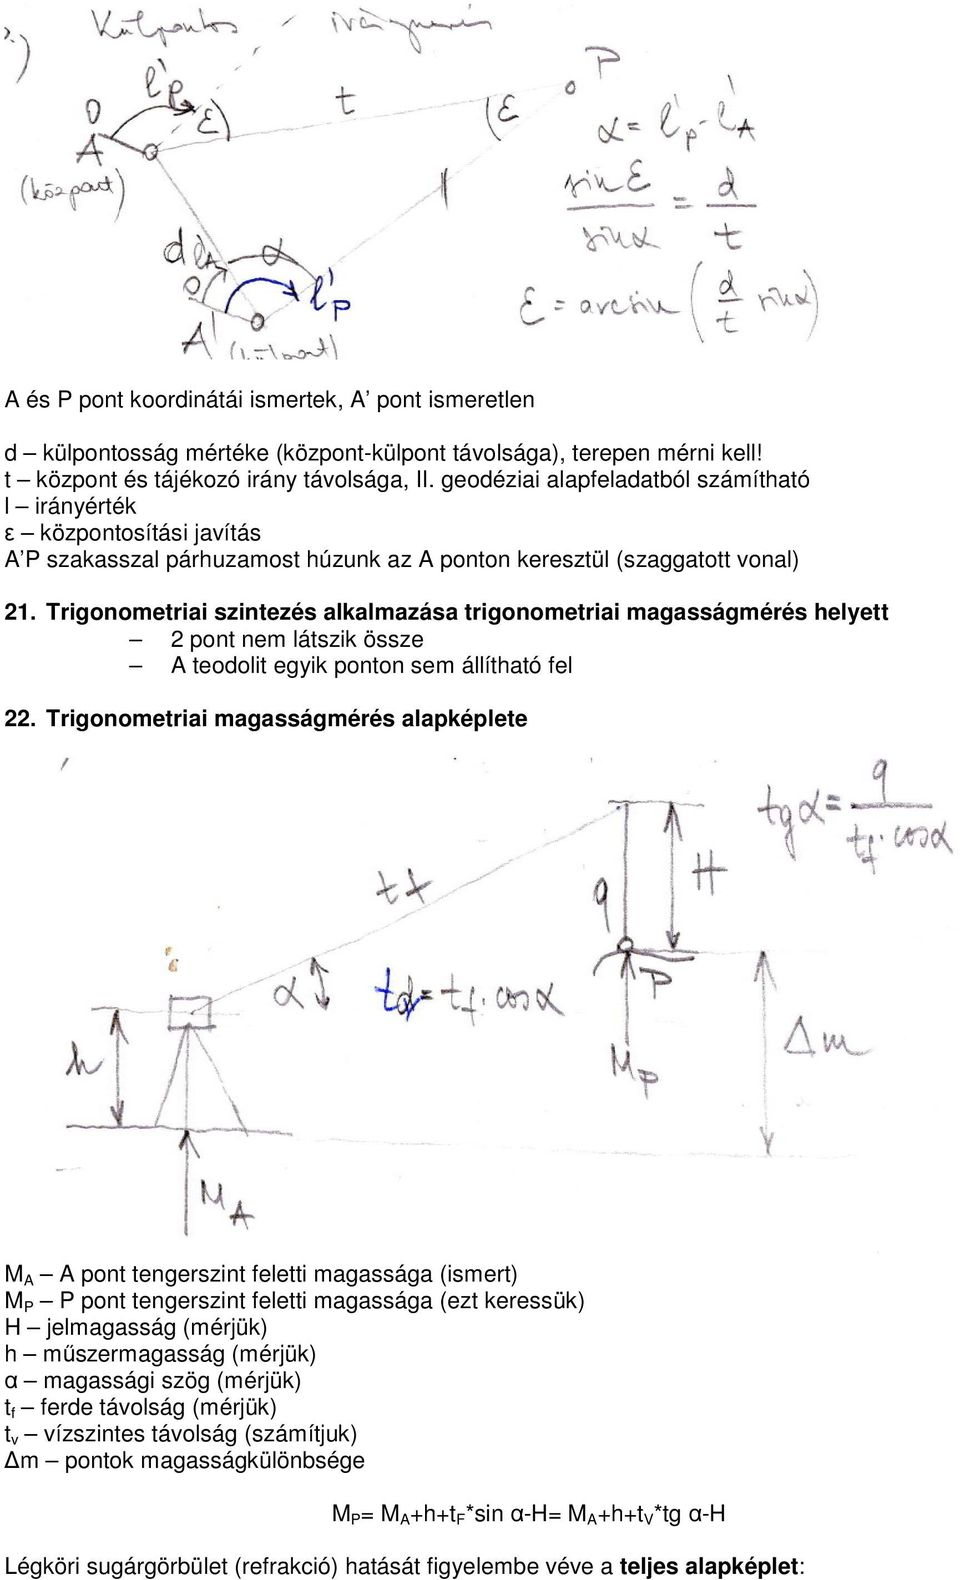 Trigonometriai szintezés alkalmazása trigonometriai magasságmérés helyett pont nem látszik össze teodolit egyik ponton sem állítható fel.